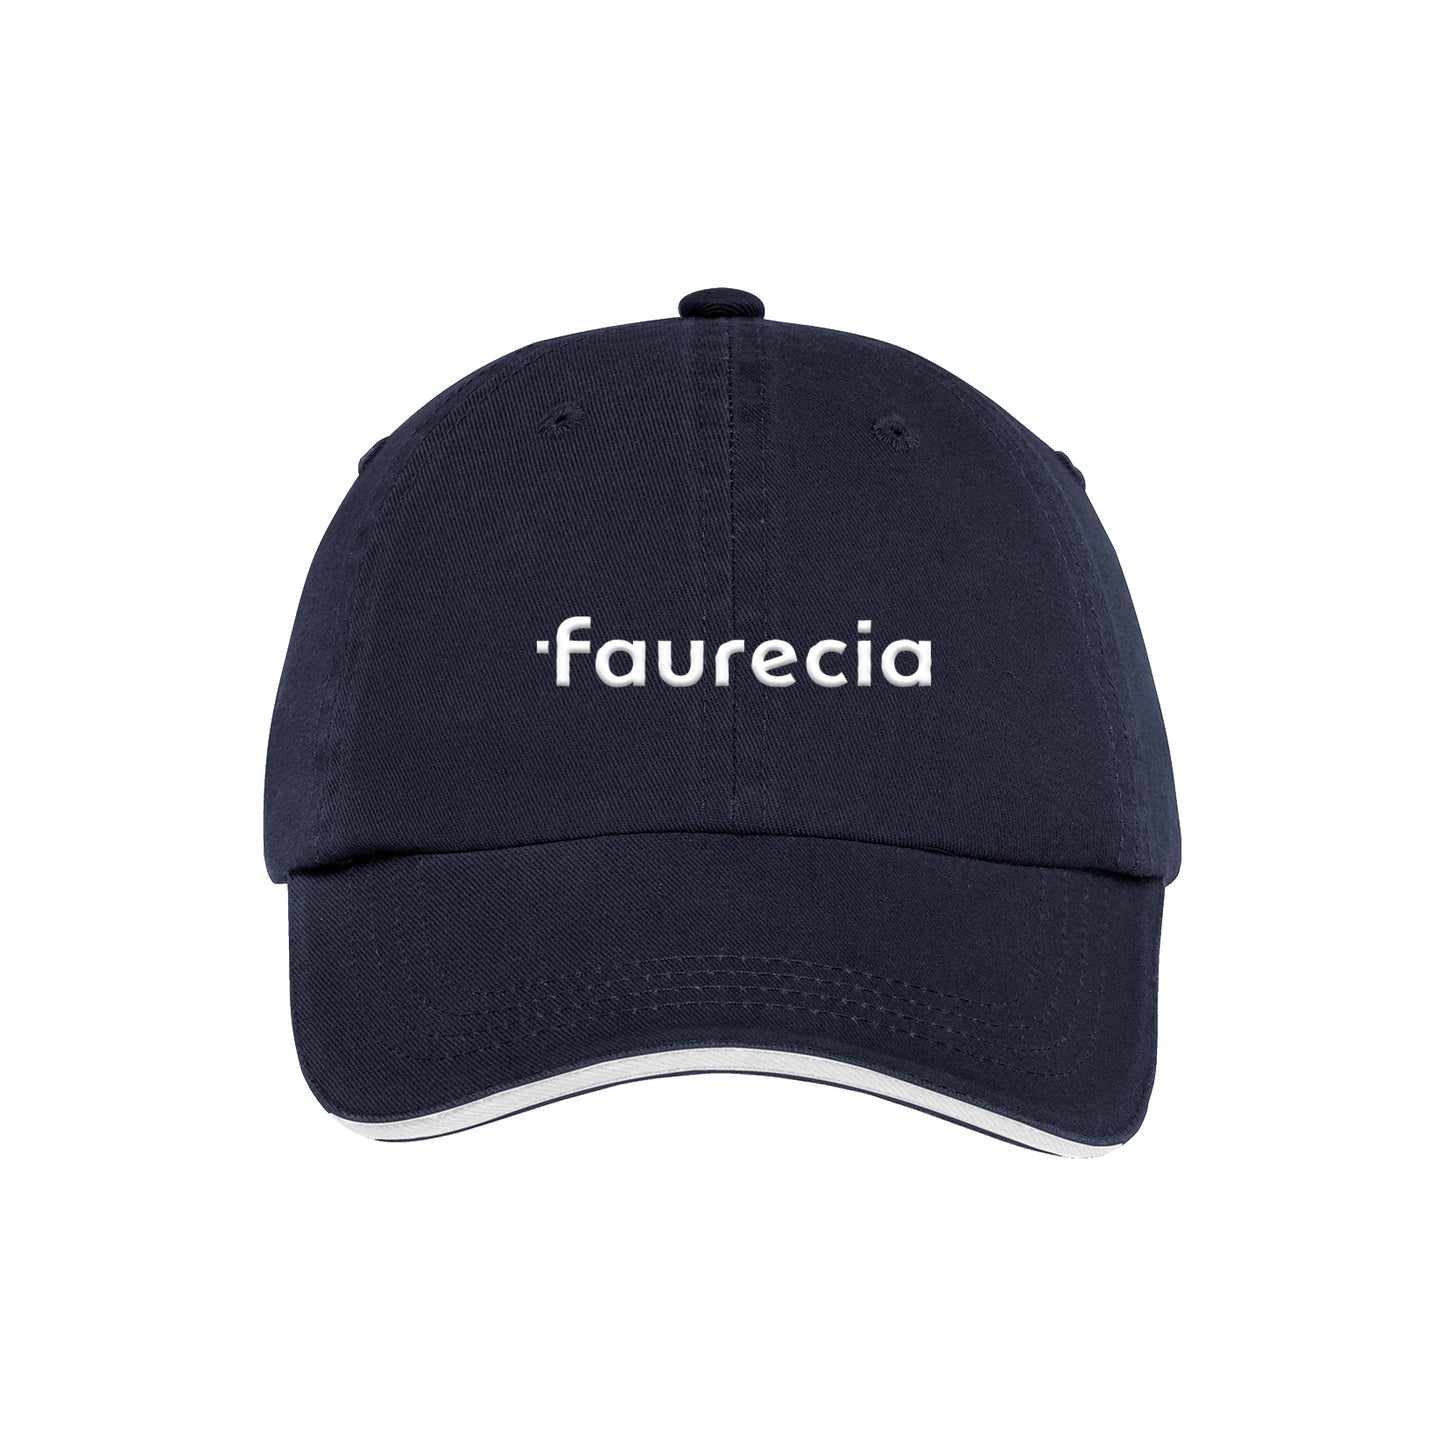 Faurecia | Sandwich Bill Cap with Striped Closure